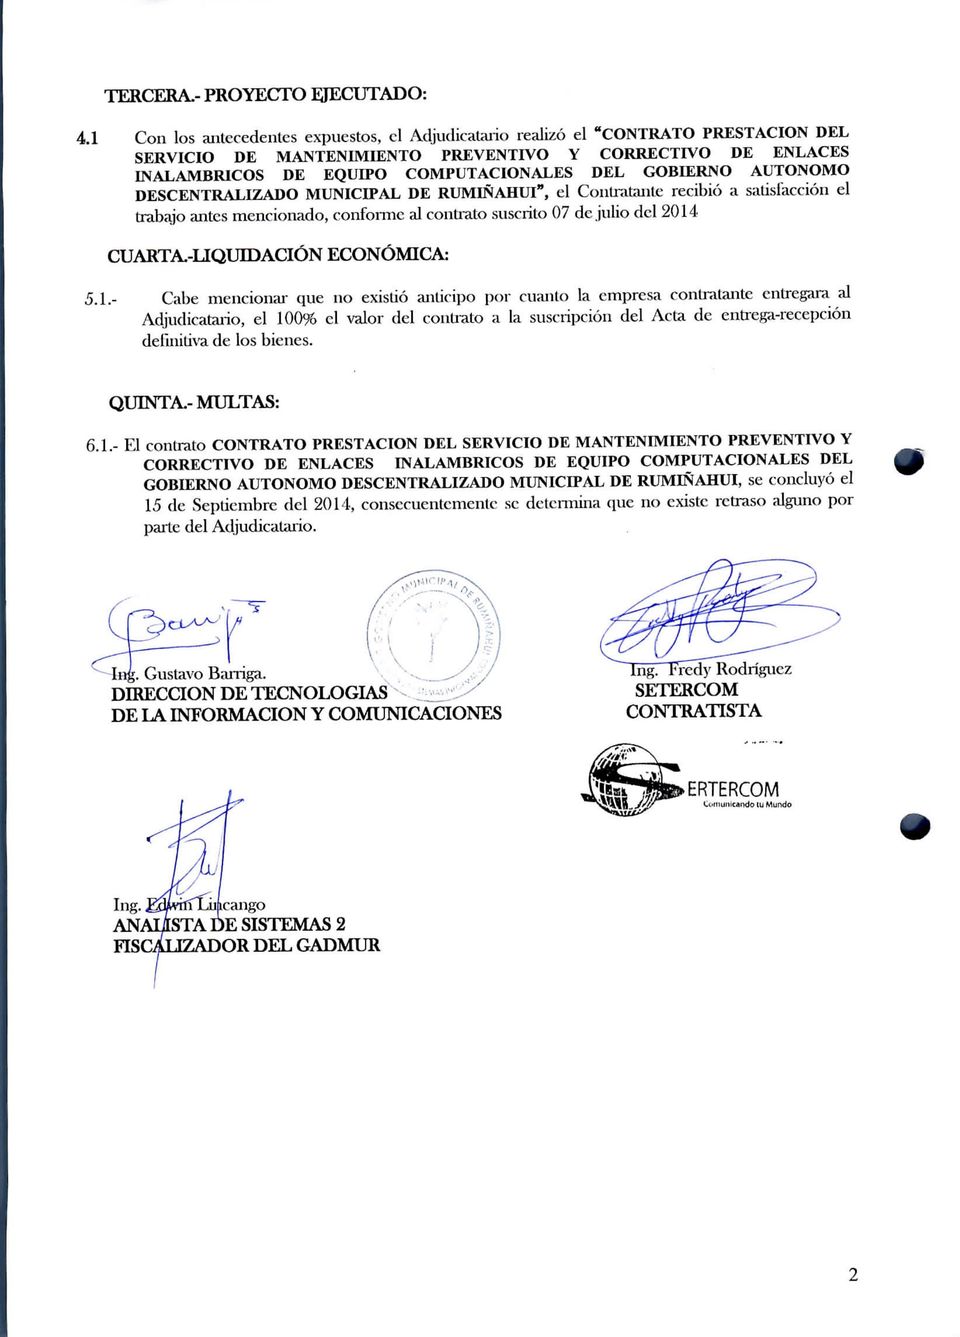 AUTÓNOMO DESCENTRALIZADO MUNICIPAL DE RUMIÑAHUl", el Contratante recibió a salisiacción el trabajo antes mencionado, conforme al contrato suscrito 07 de julio del 2014 CUARTA.